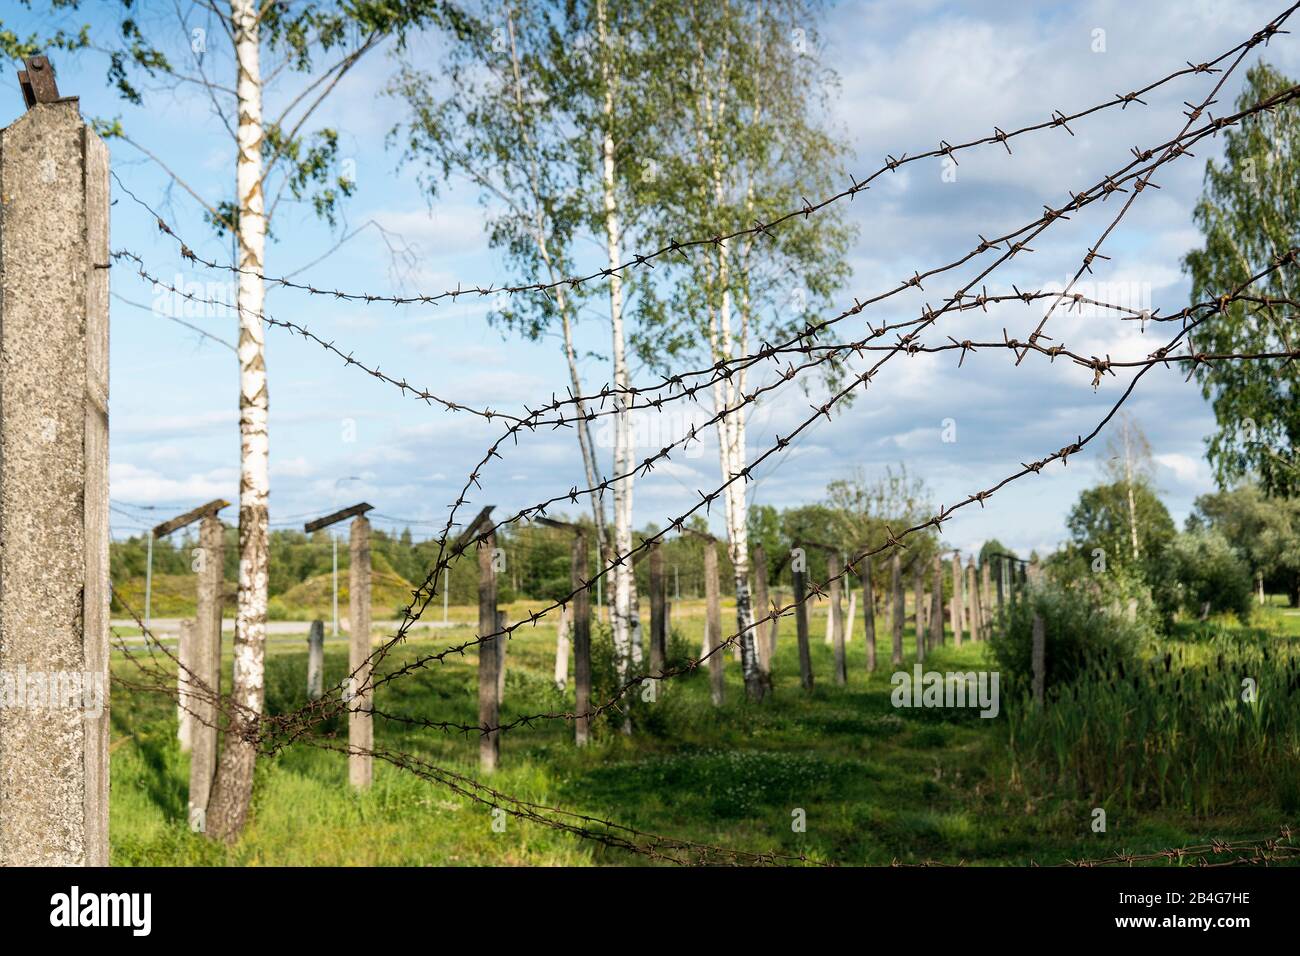 Estonie, Tartu, ancienne base de missiles nucléaires soviétiques, clôture de fil barbelé, barrière symbolique Banque D'Images